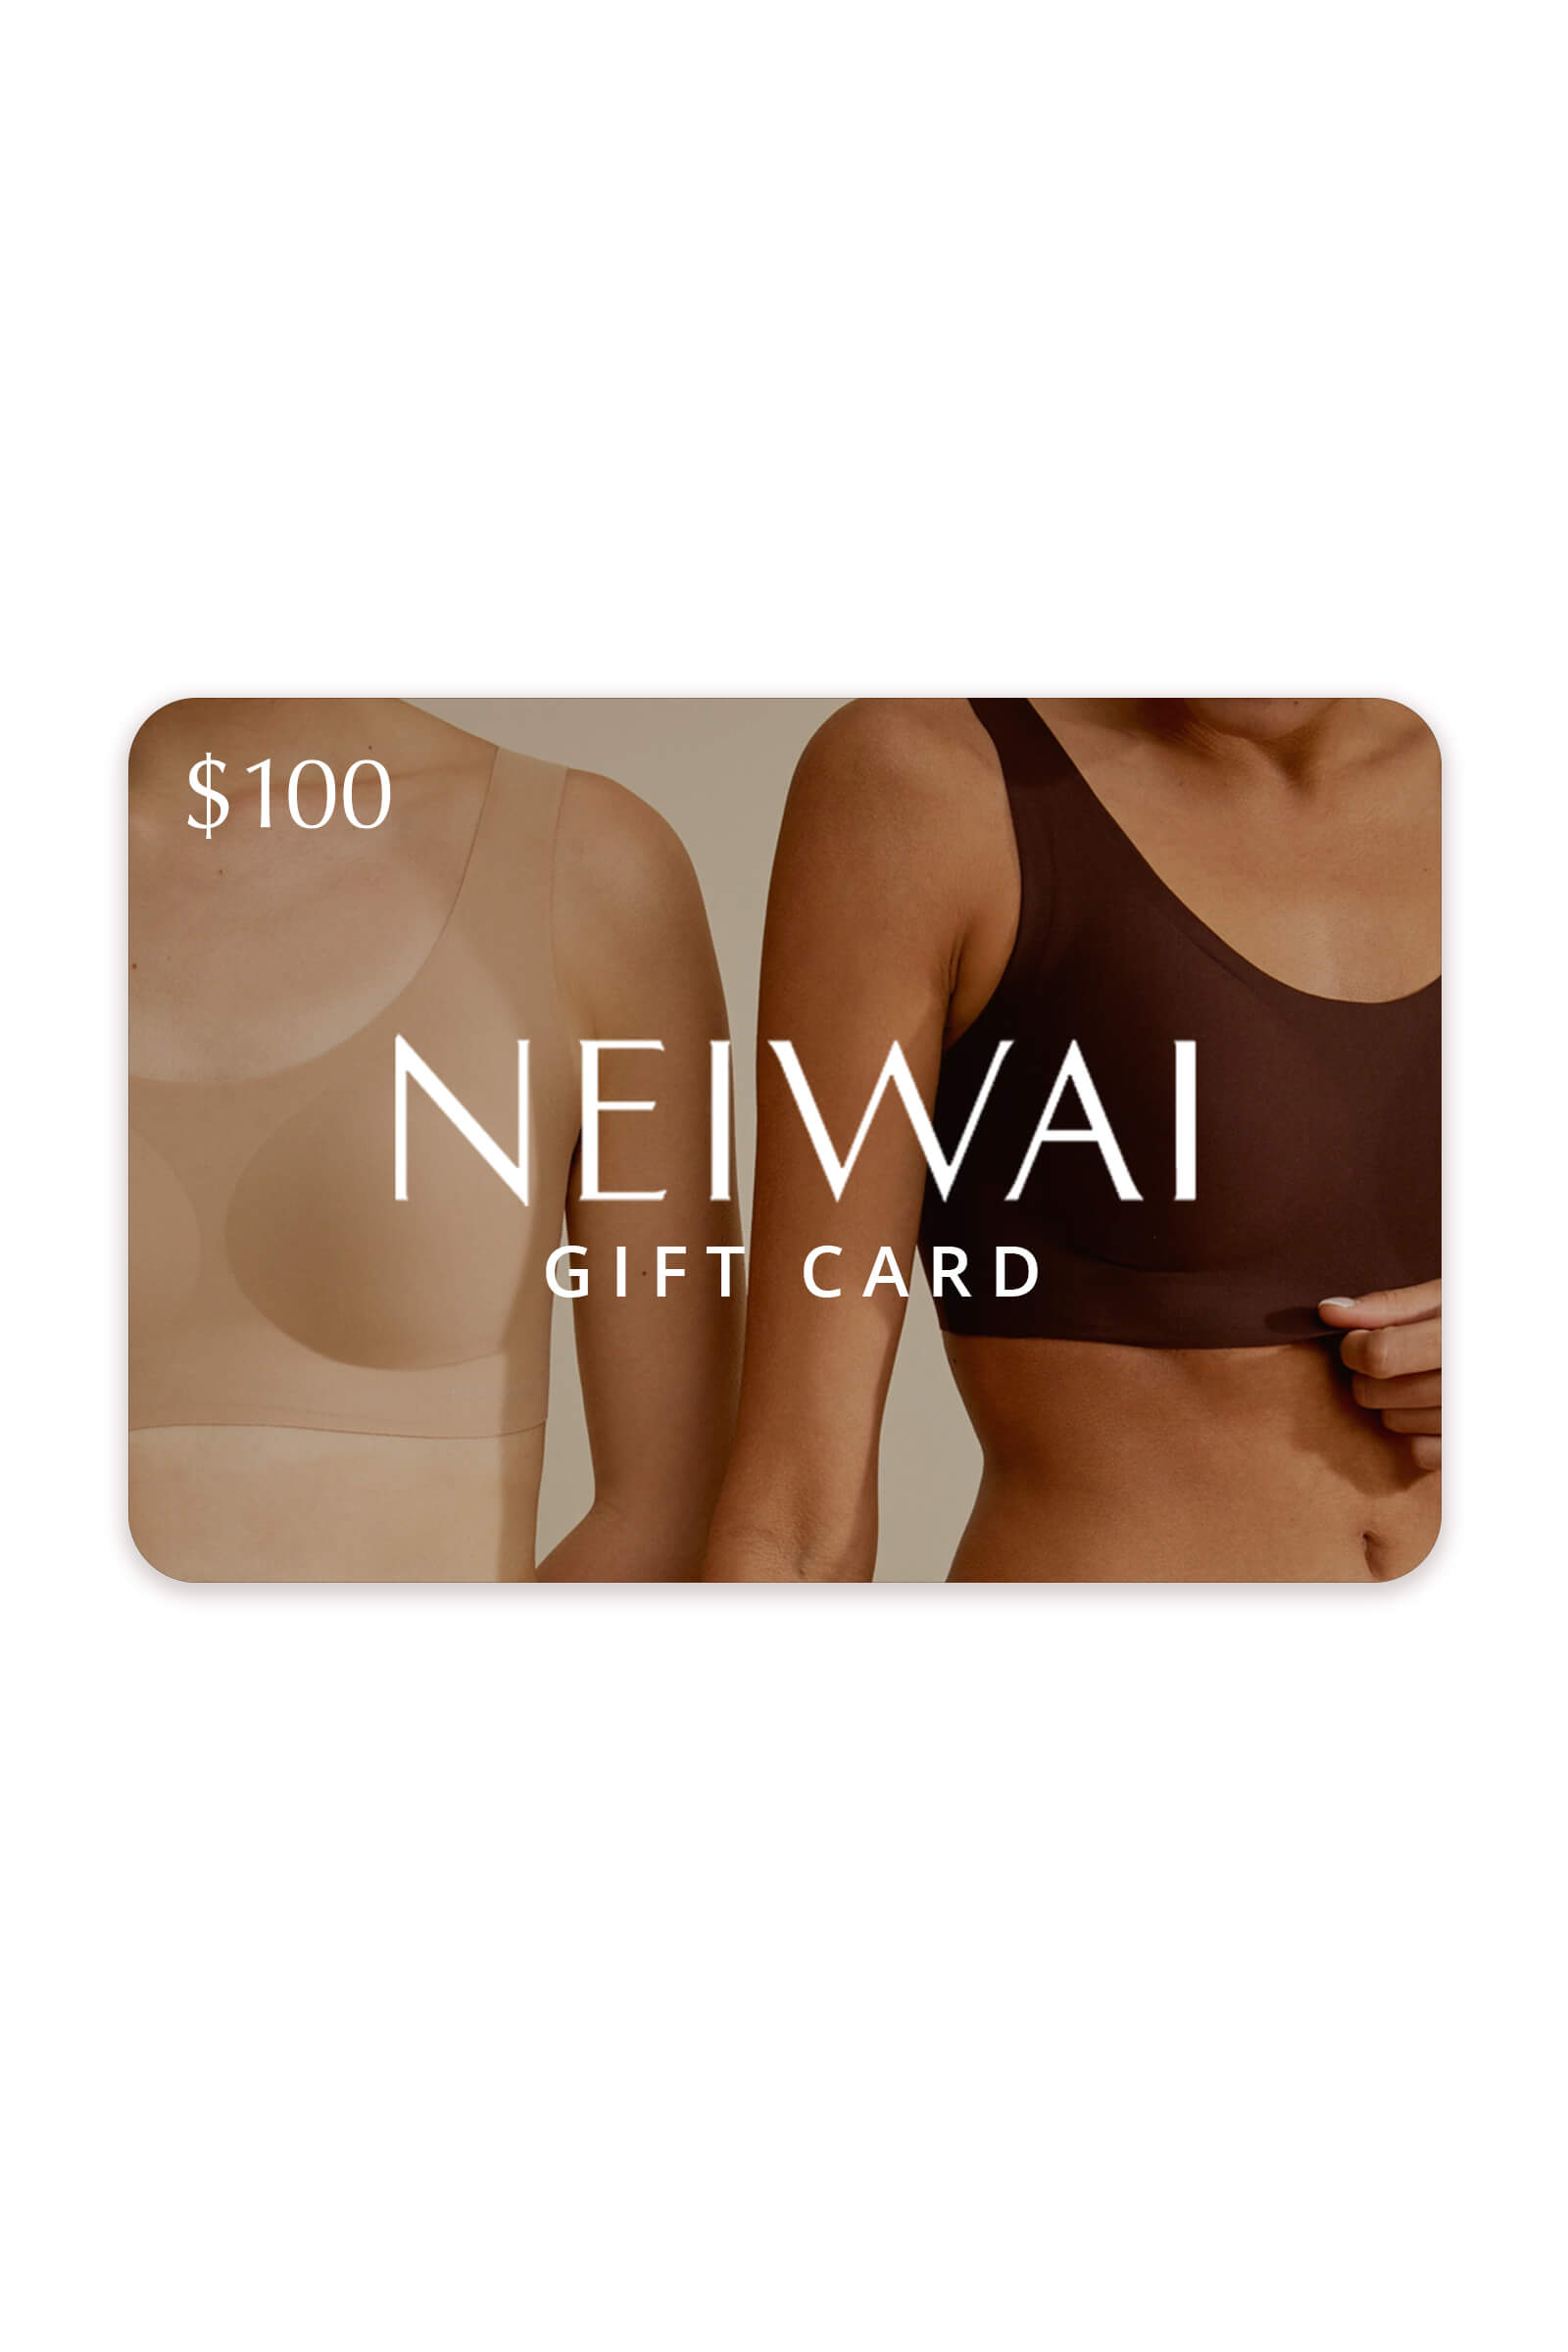 NEIWAI gift card $100